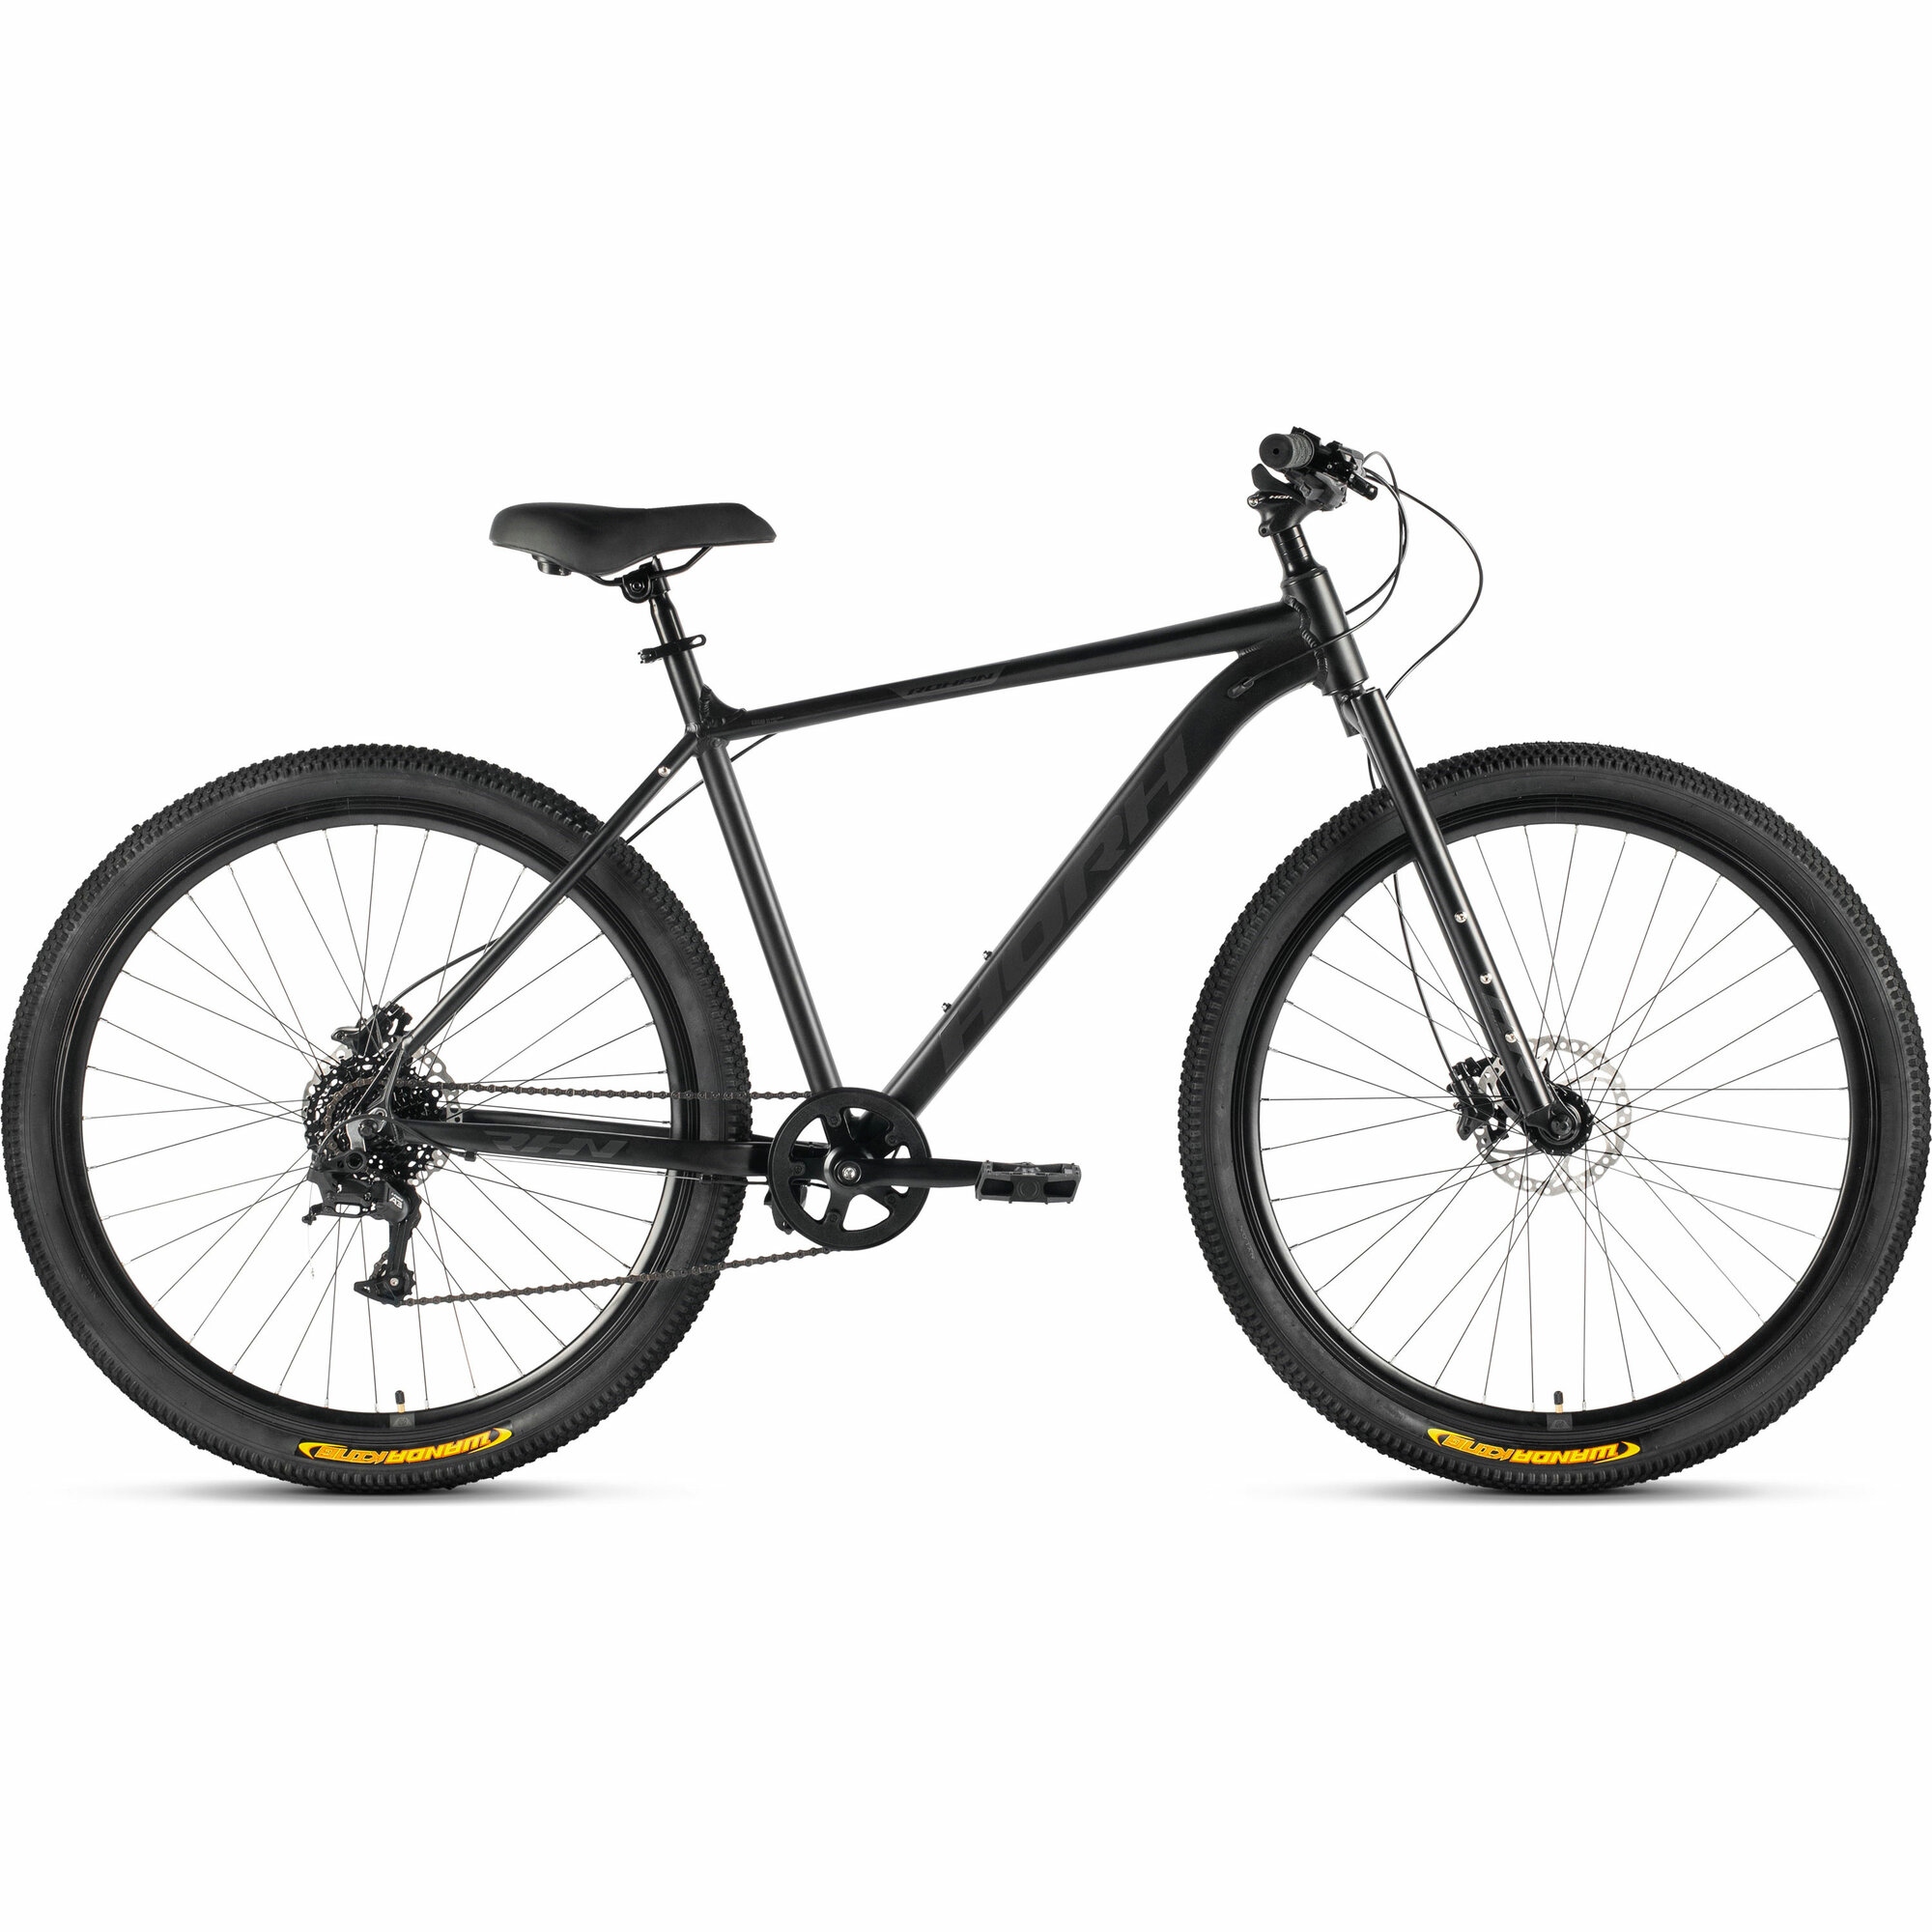 Велосипед горный HORH ROHAN RHD 9.1R 29" (2024), ригид, взрослый, мужской, алюминиевая рама, 8 скоростей, дисковые гидравлические тормоза, цвет Black-Grey, черный/серый цвет, размер рамы 21", для роста 185-195 см